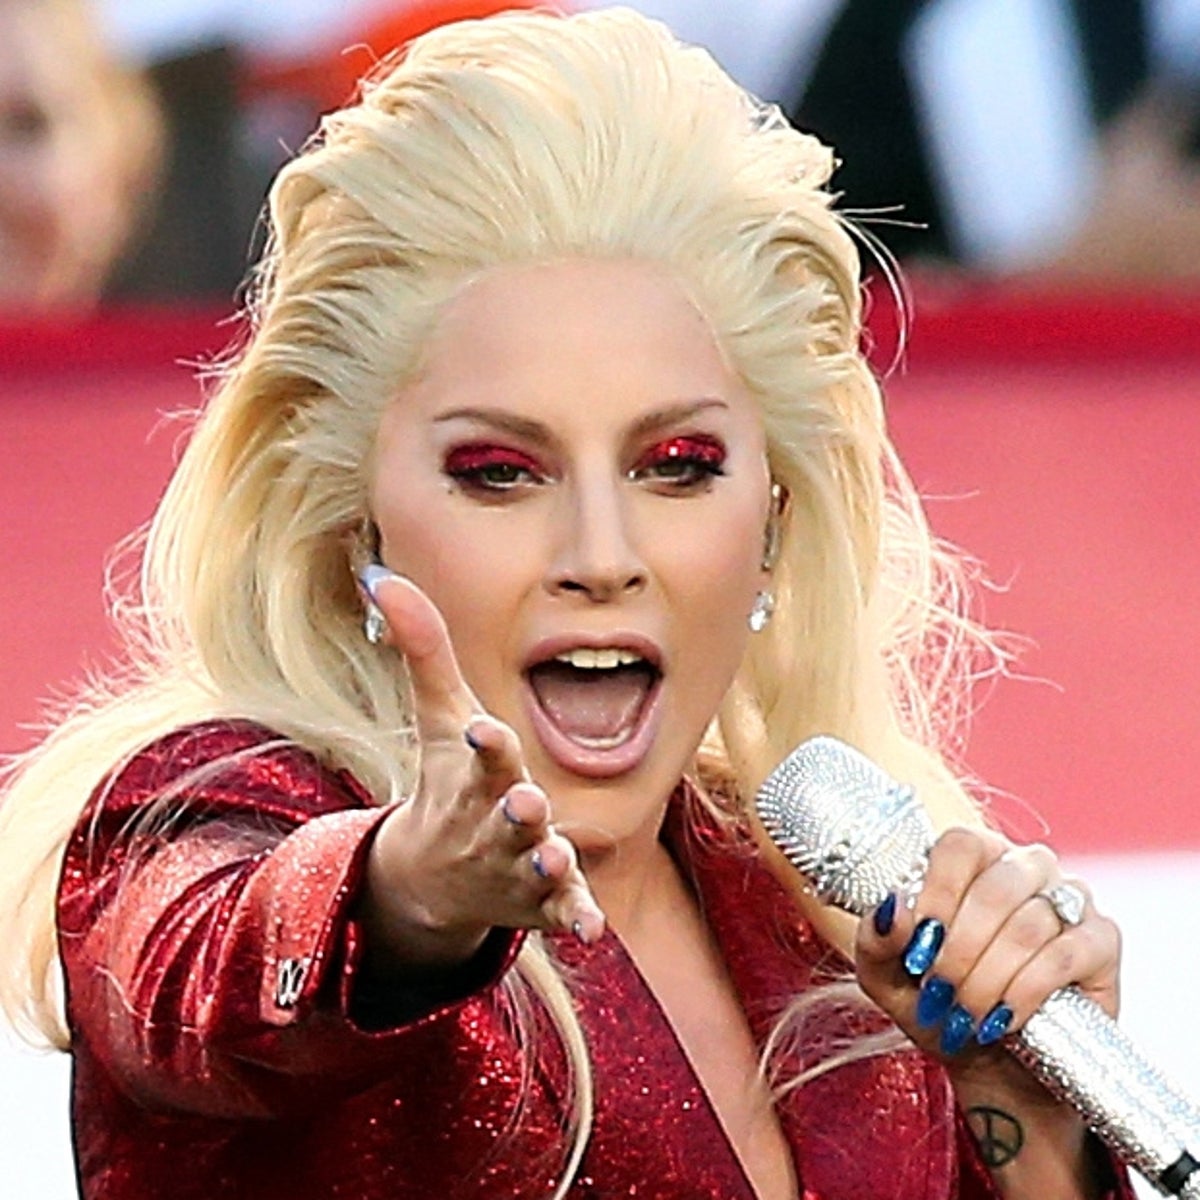 Lady-Gaga-Super-Bowl.jpg?width=1200&heig